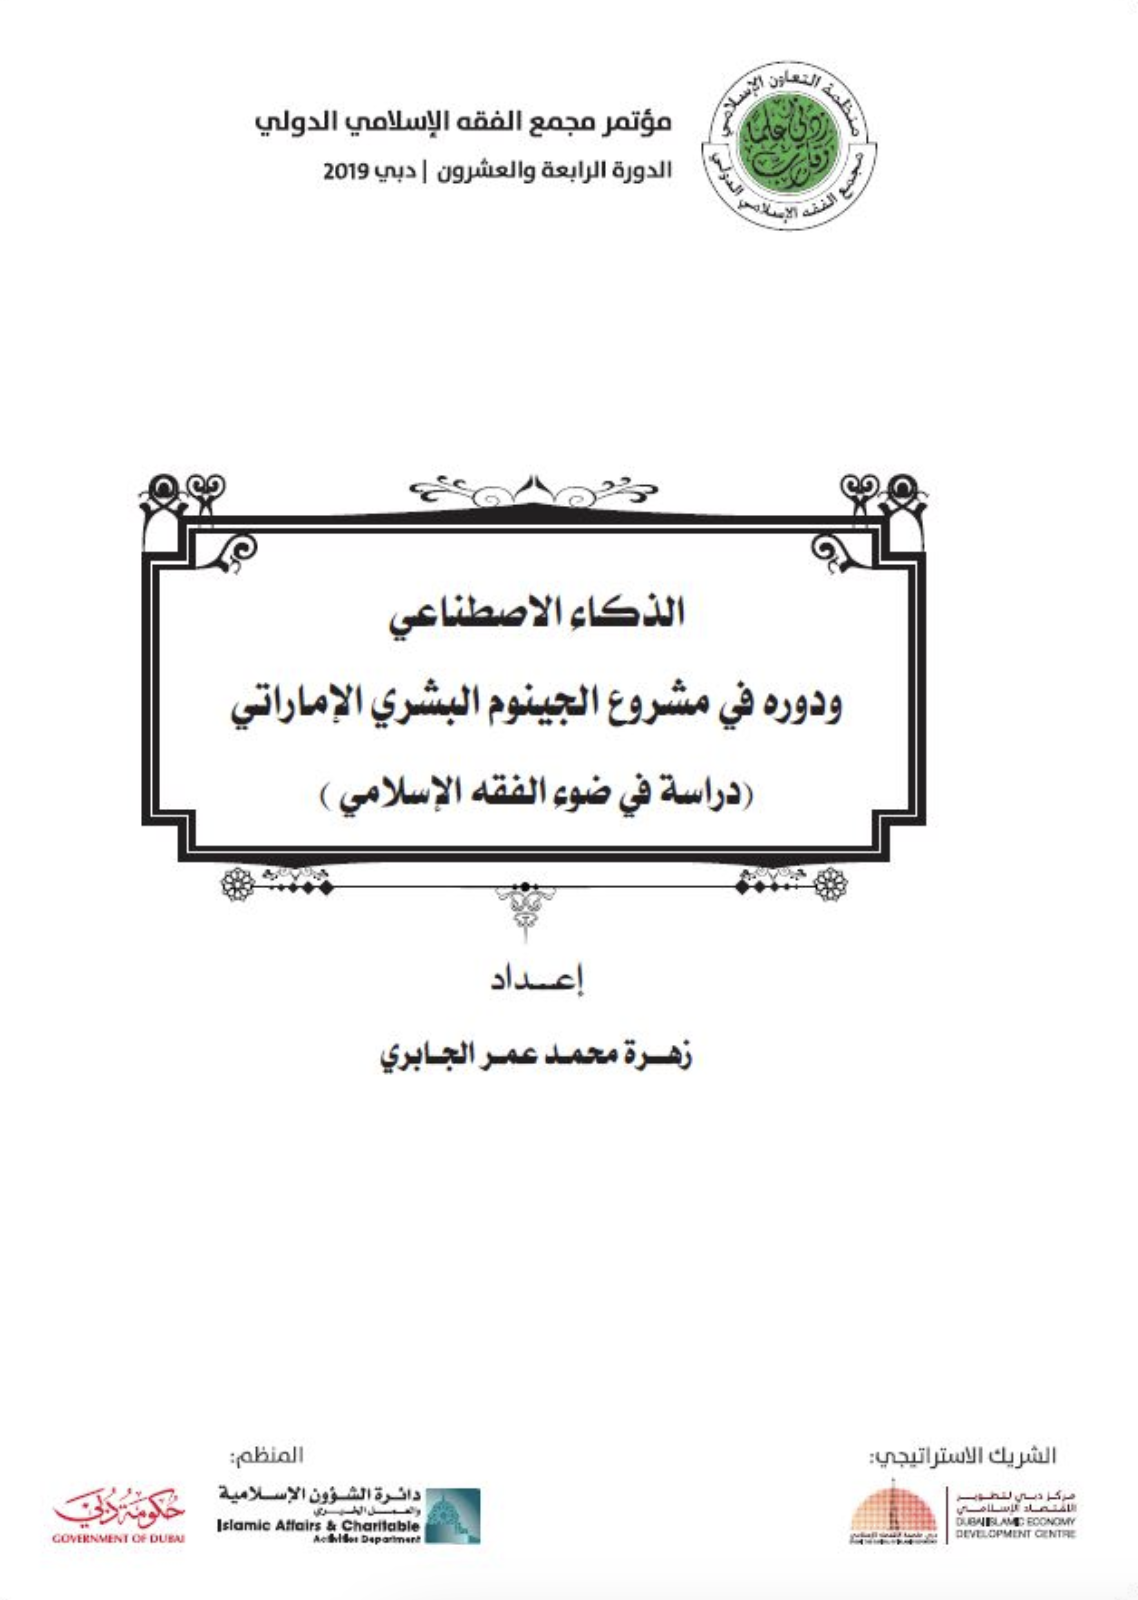 غلاف كتاب الذكاء الاصطناعي ودوره في مشروع الجينوم البشري الإماراتي : دراسة في ضوء الفقه الإسلامي